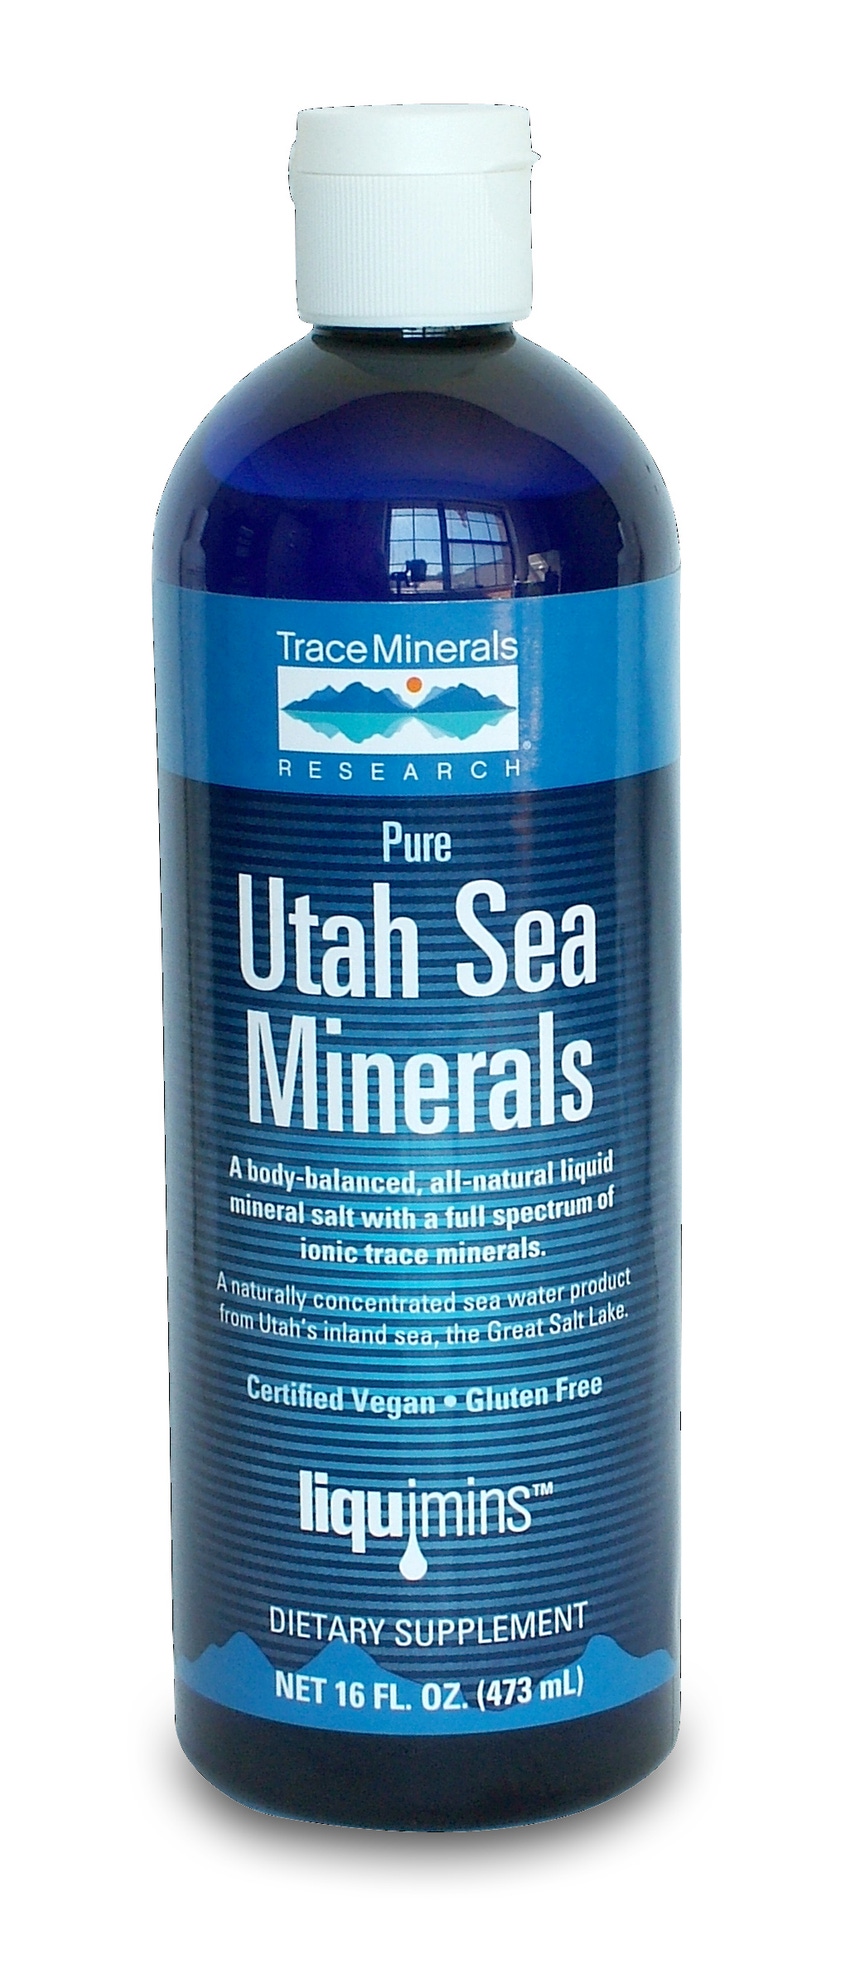 Utah Sea Minerals now Non-GMO Project Verified